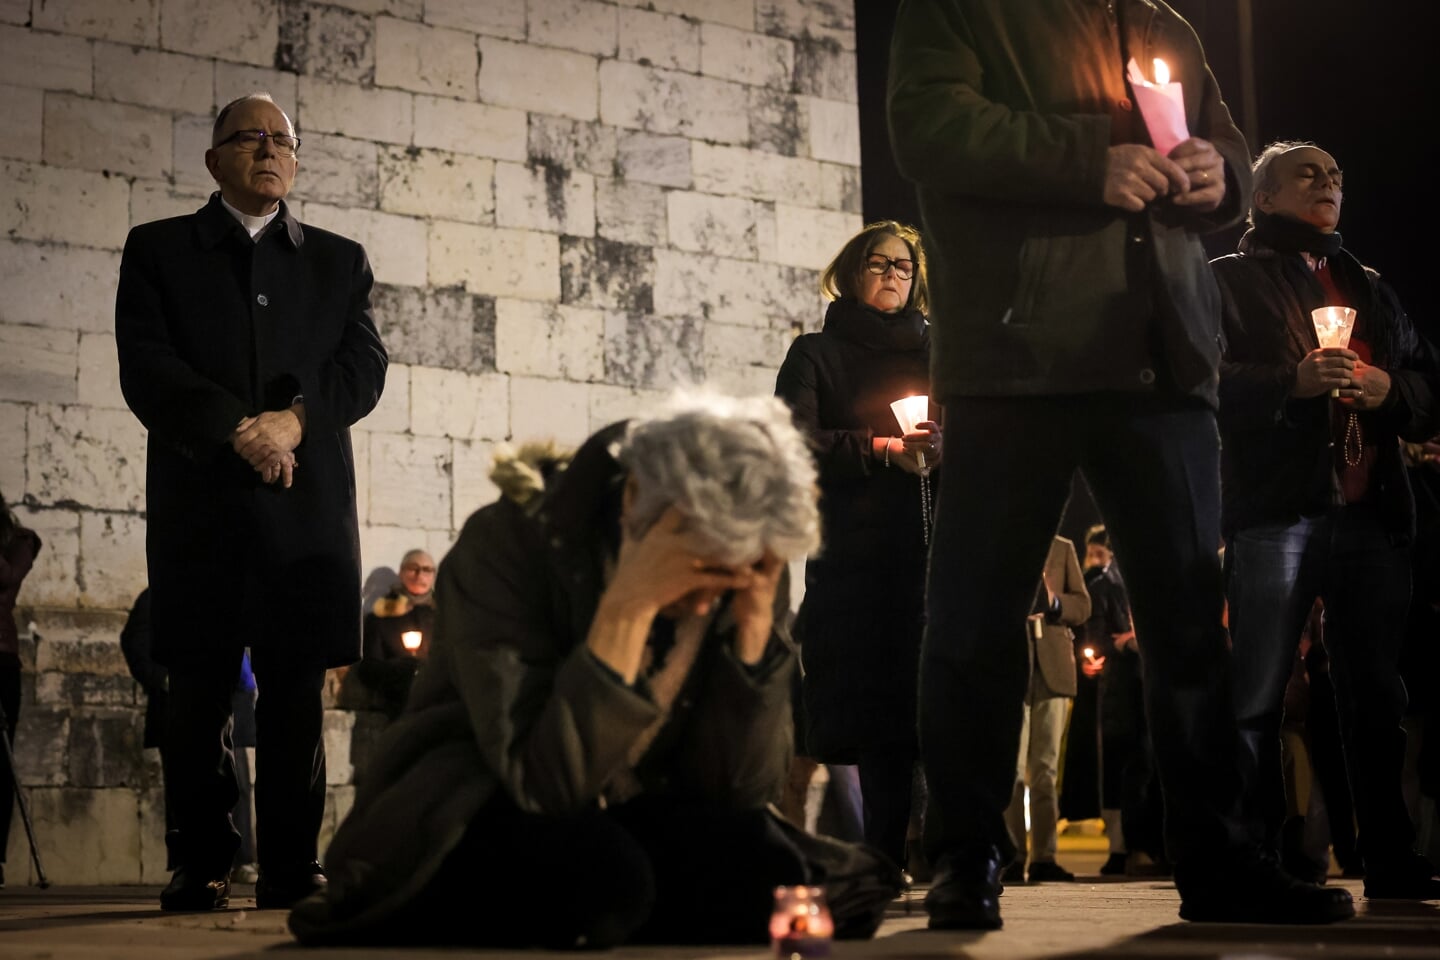 Op 22 februari werd in Portugal een gebedsdienst gehouden voor slachtoffers van kerkelijk seksueel misbruik. 